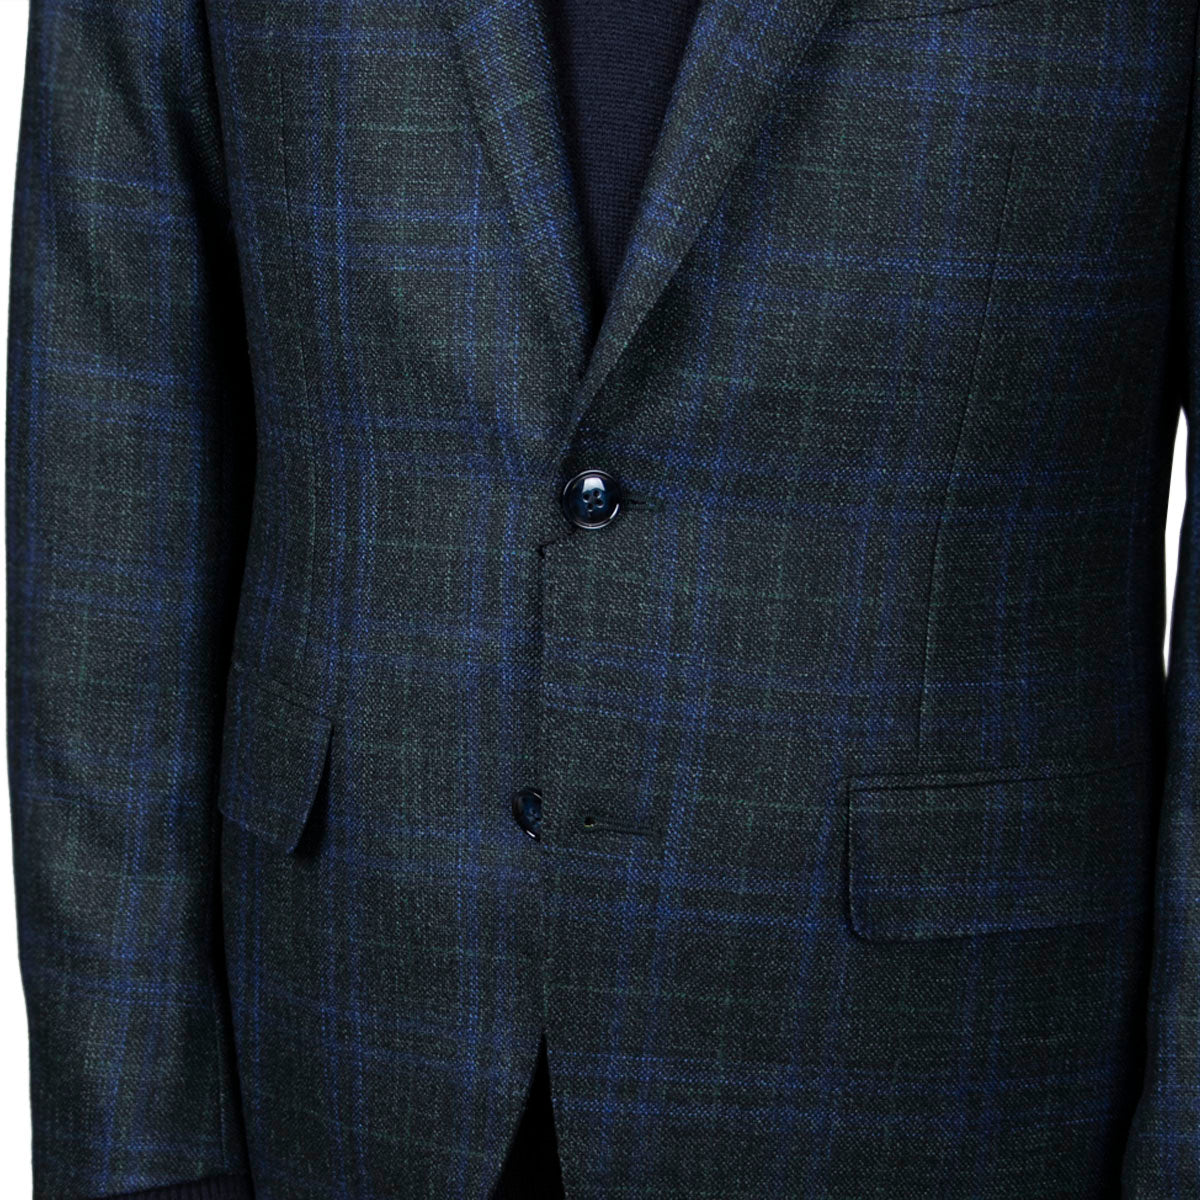 Dark Green & Blue Check Wool, Silk, & Cashmere Jacket  Robert Old   